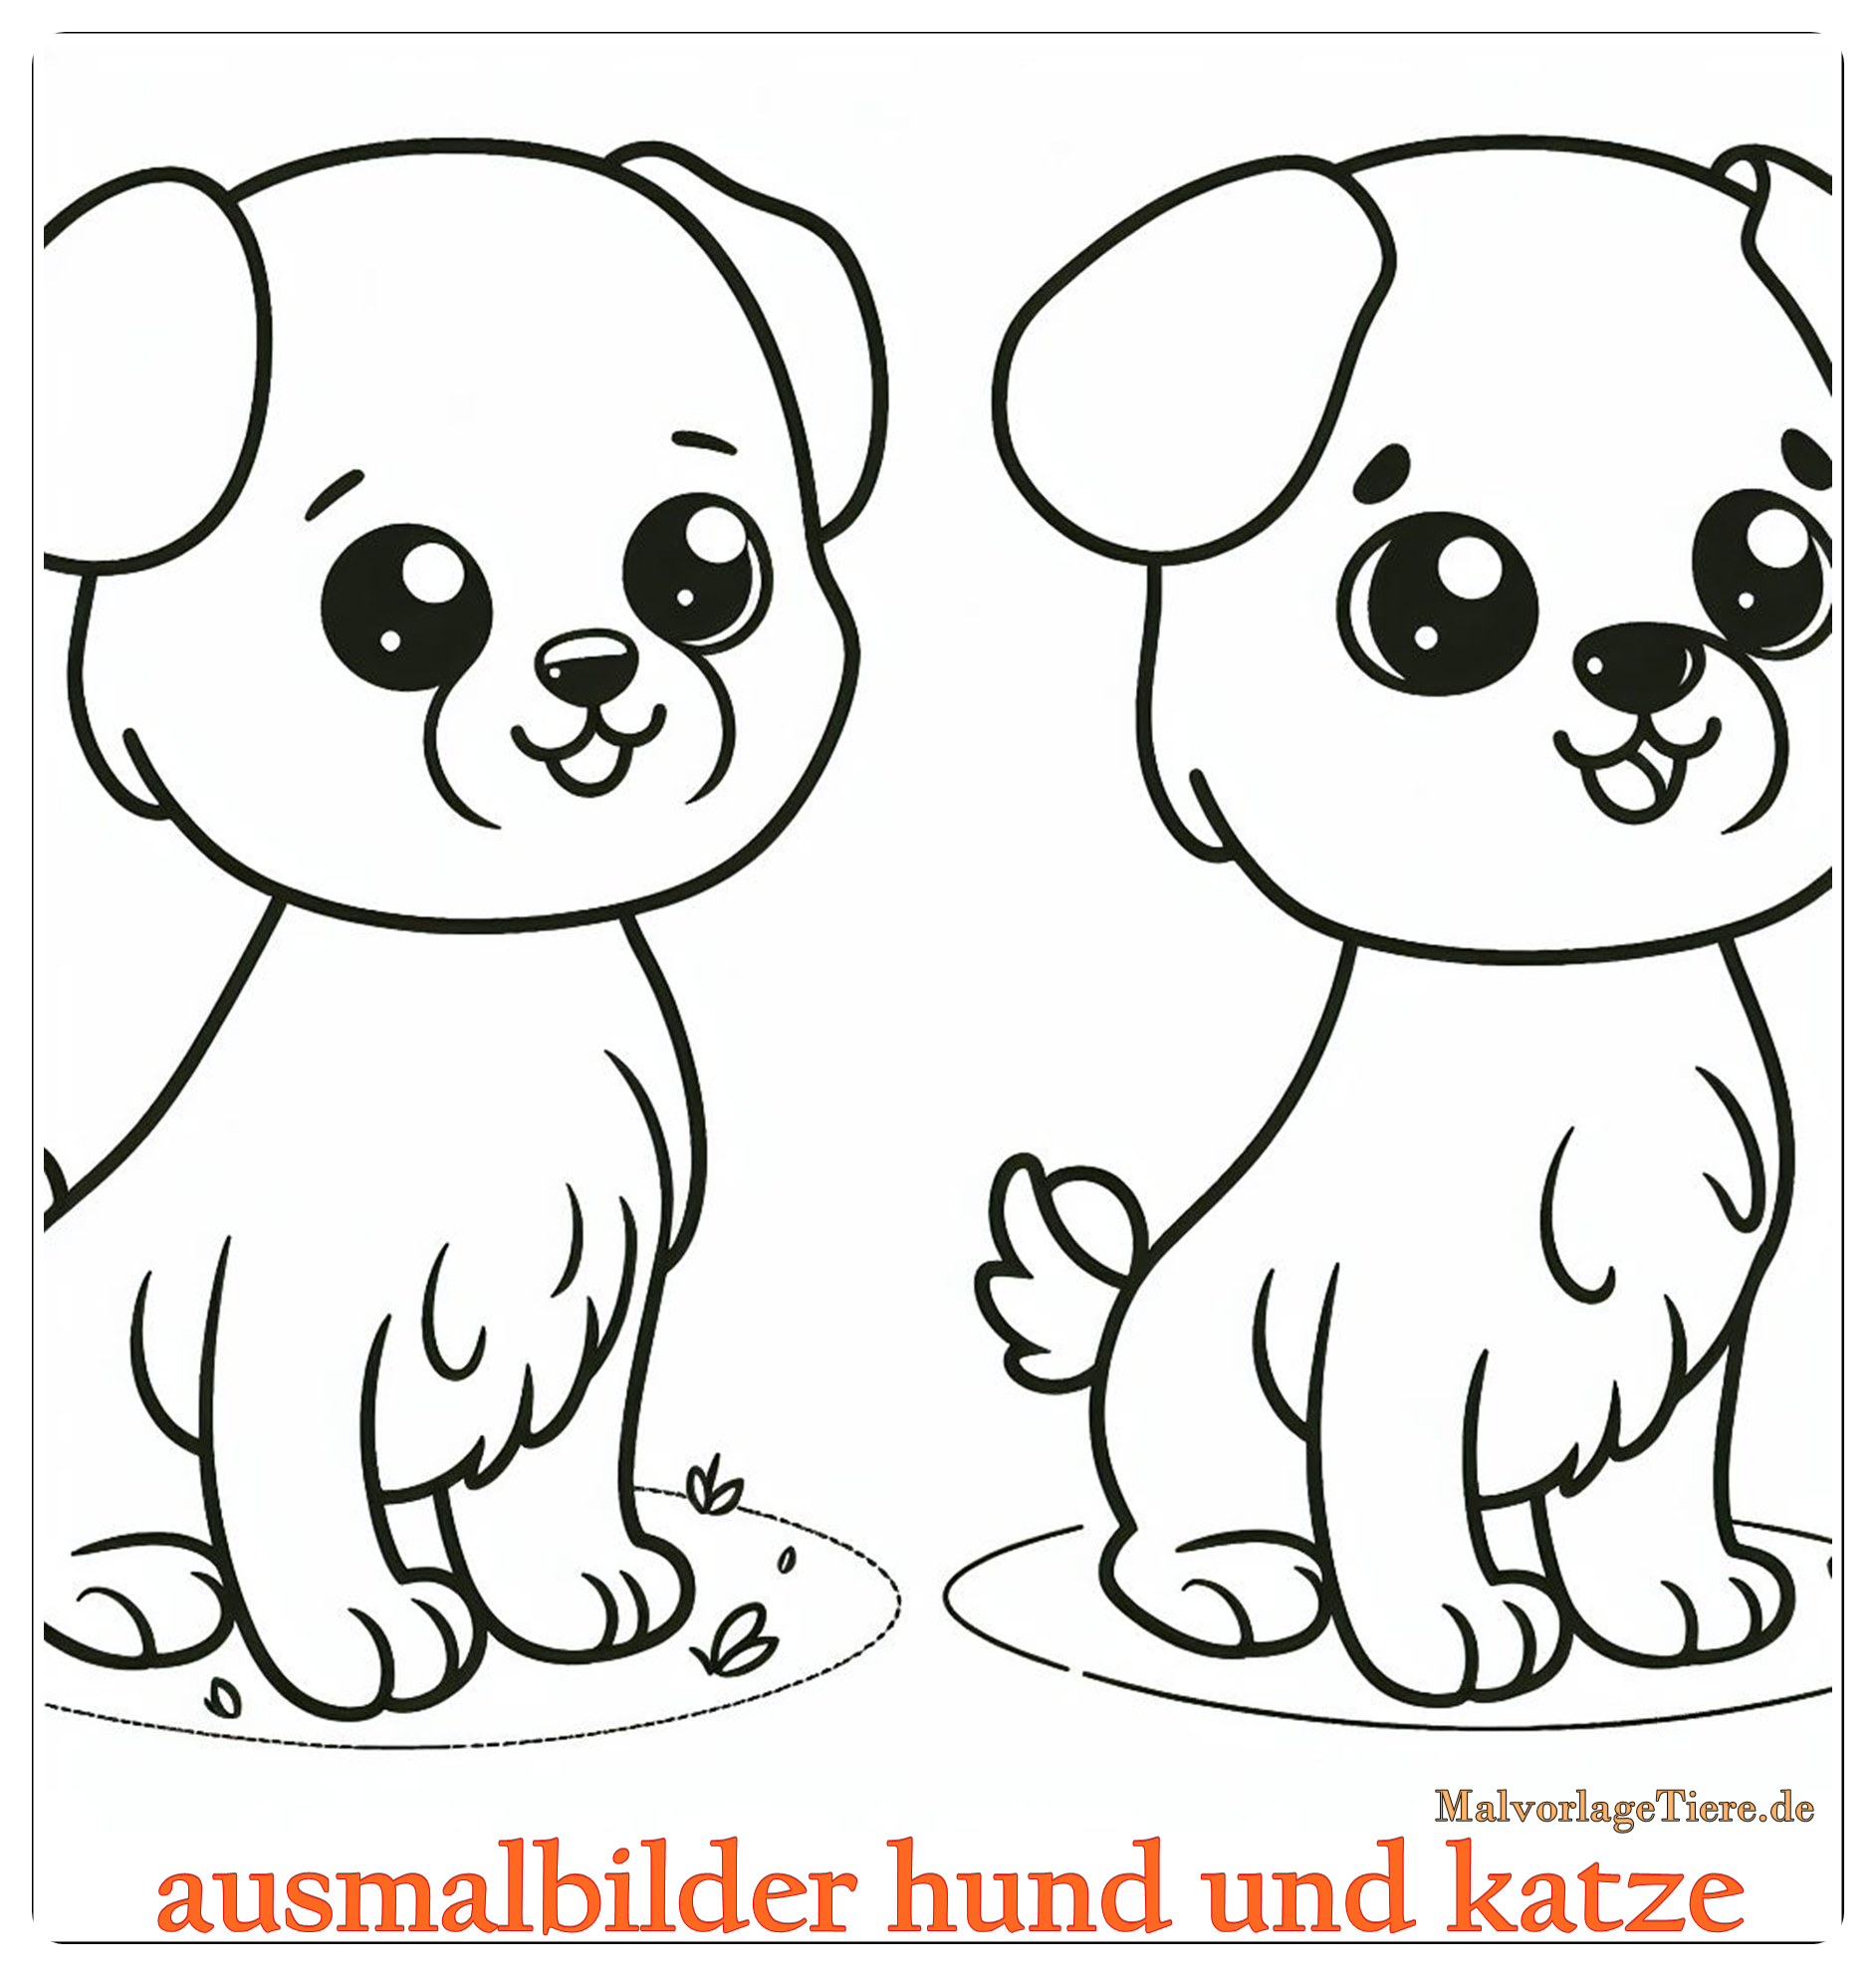 ausmalbilder hund und katze 14 by malvorlagetiere.de